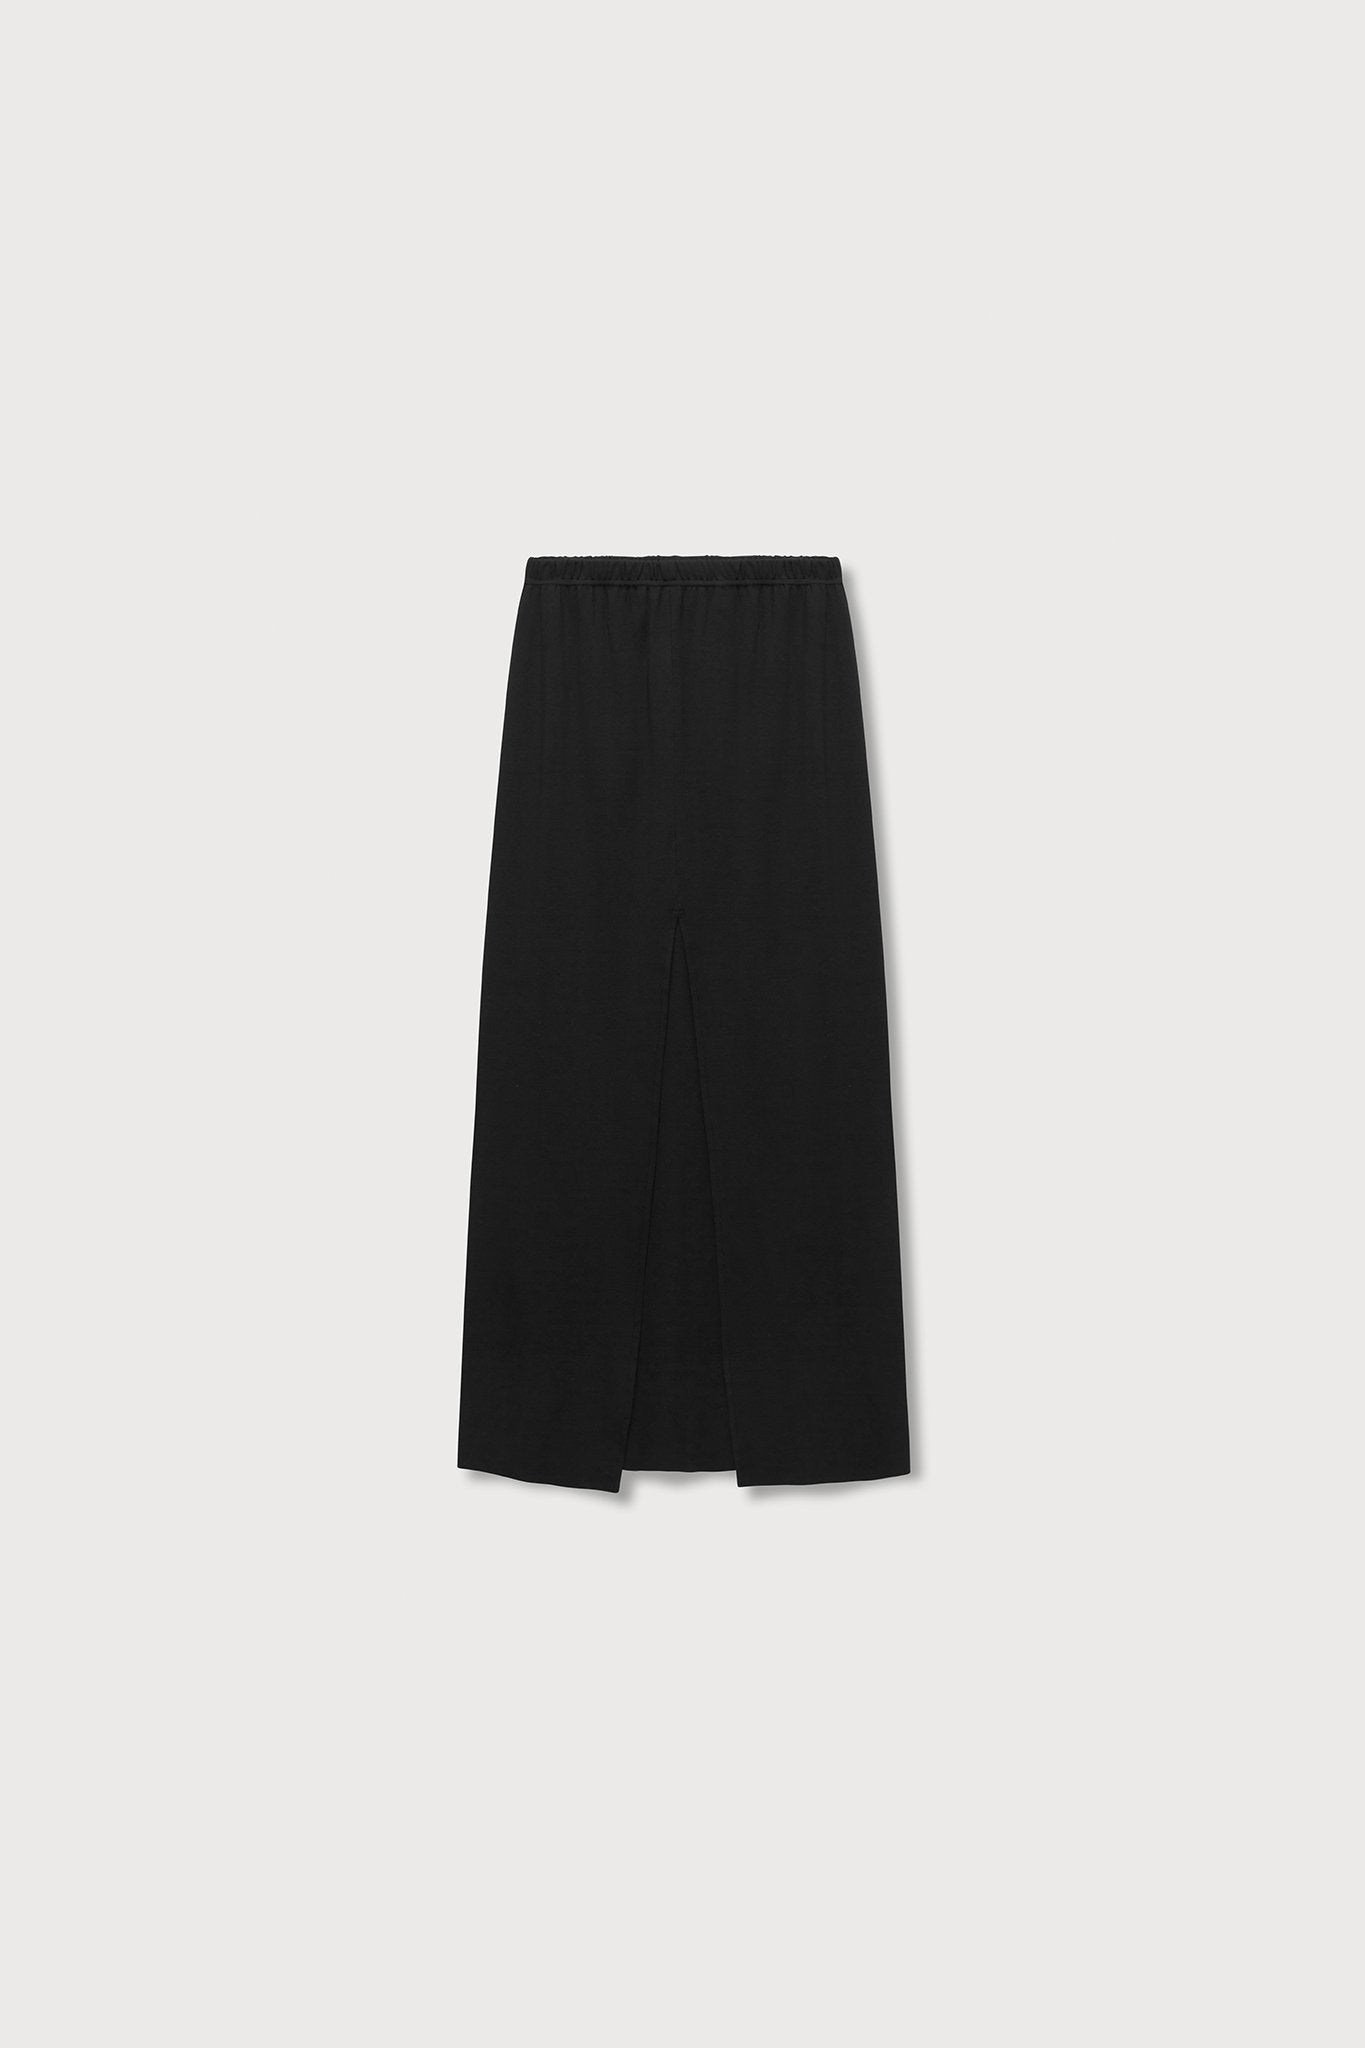 A.BCH A.41 Black Long Rib Split Skirt in Organic Cotton